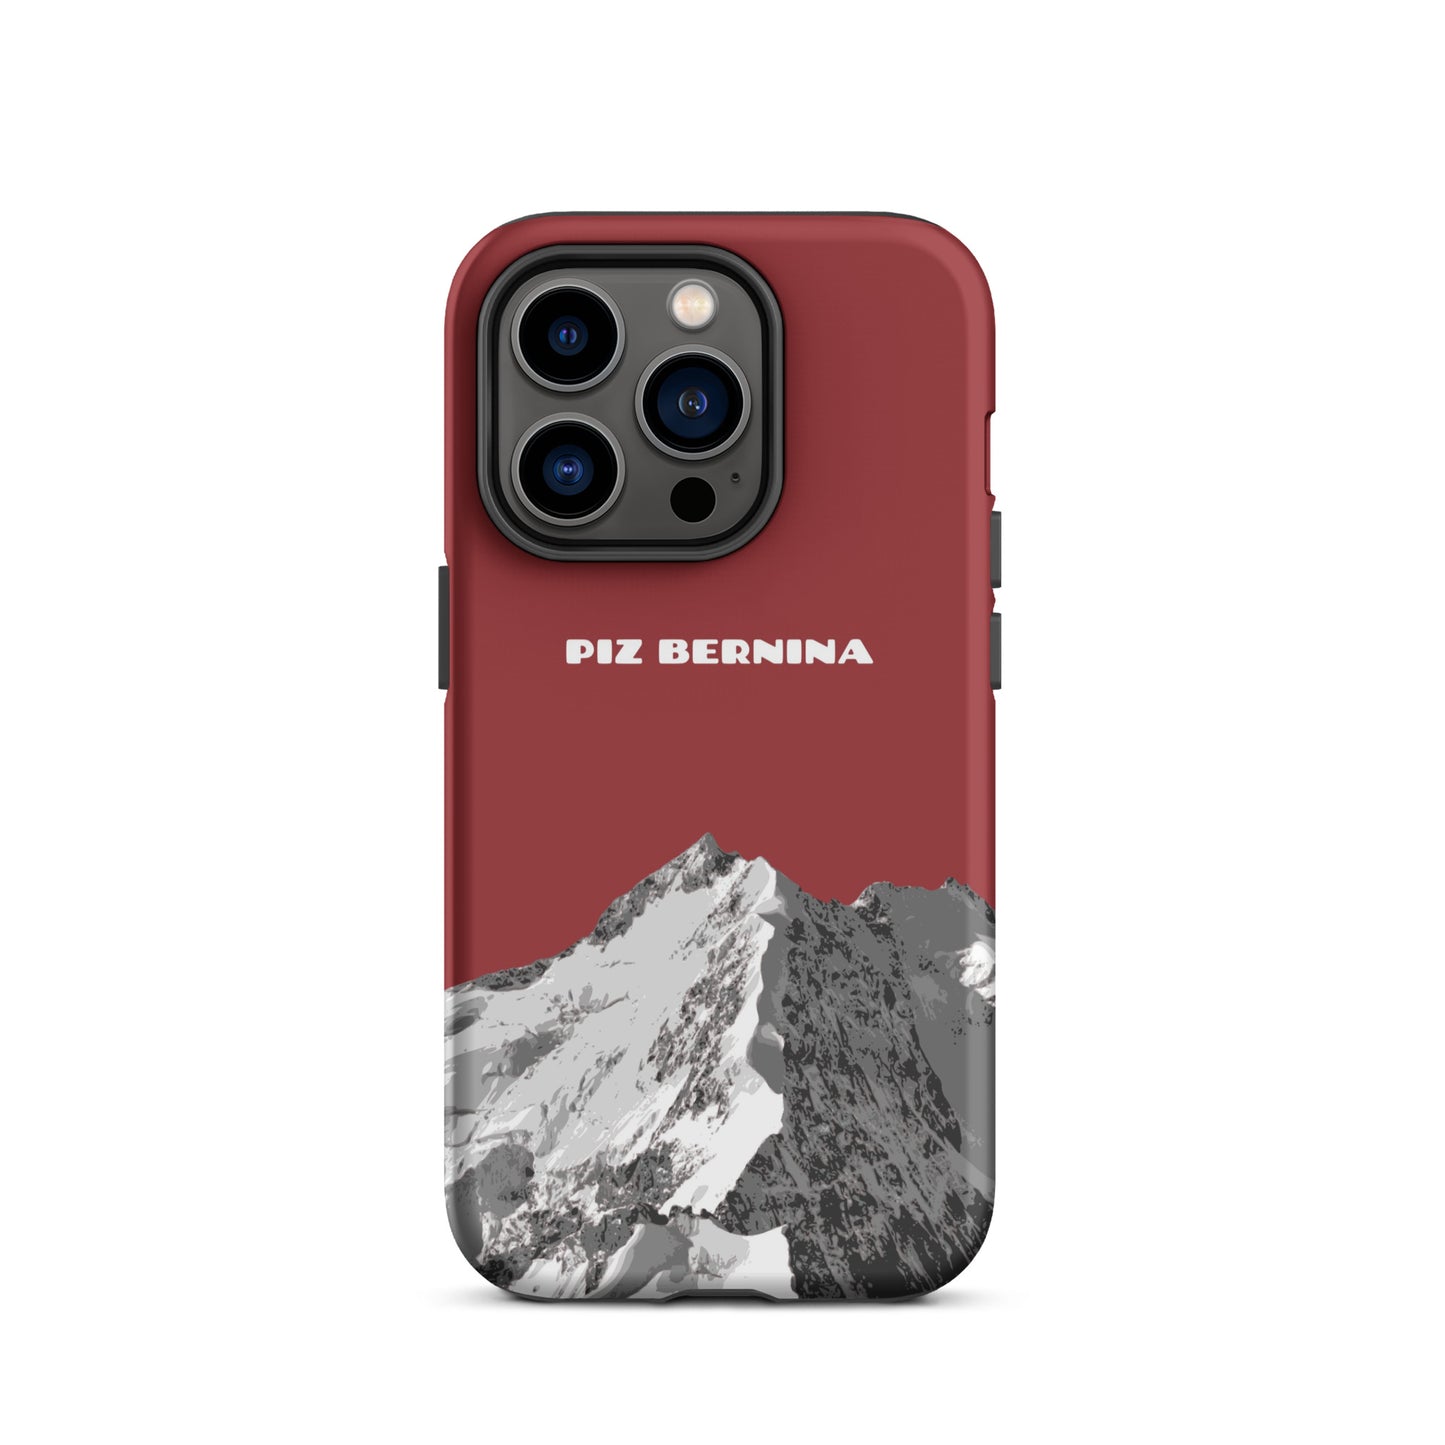 Hülle für das iPhone 14 Pro von Apple in der Farbe Rot, dass den Piz Bernina in Graubünden zeigt.